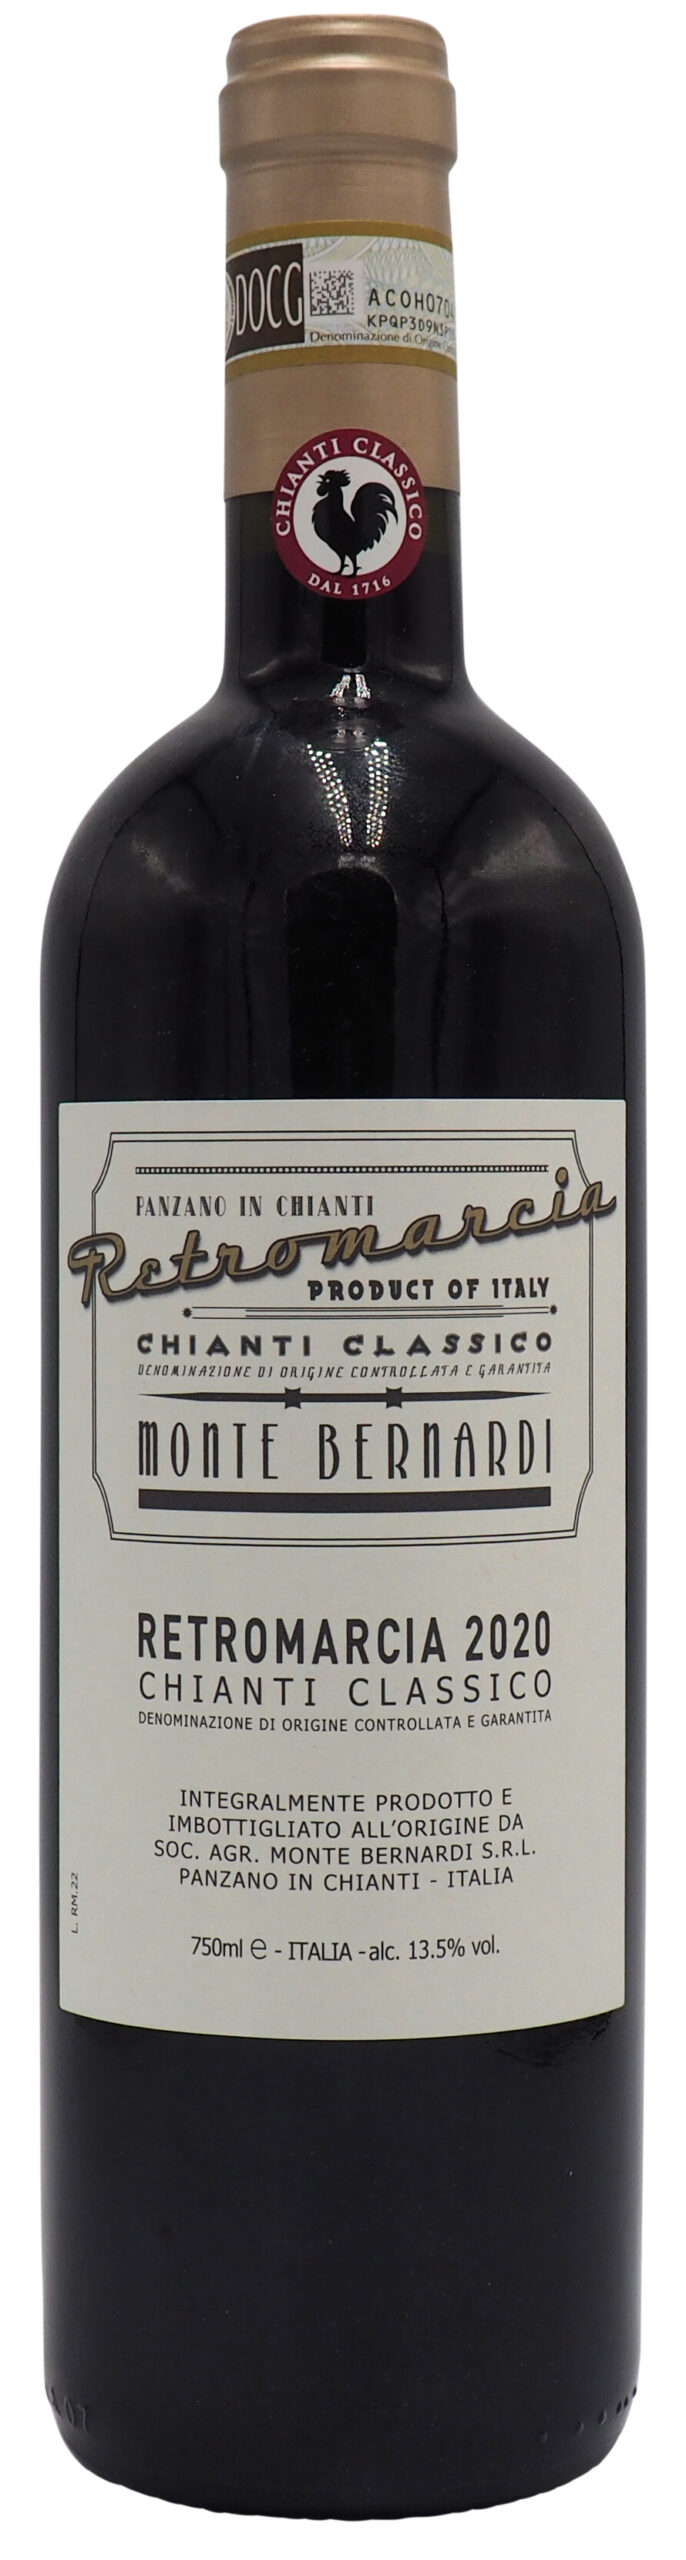 Monte Bernardi “Retromarcia” 2020 Chianti Classico